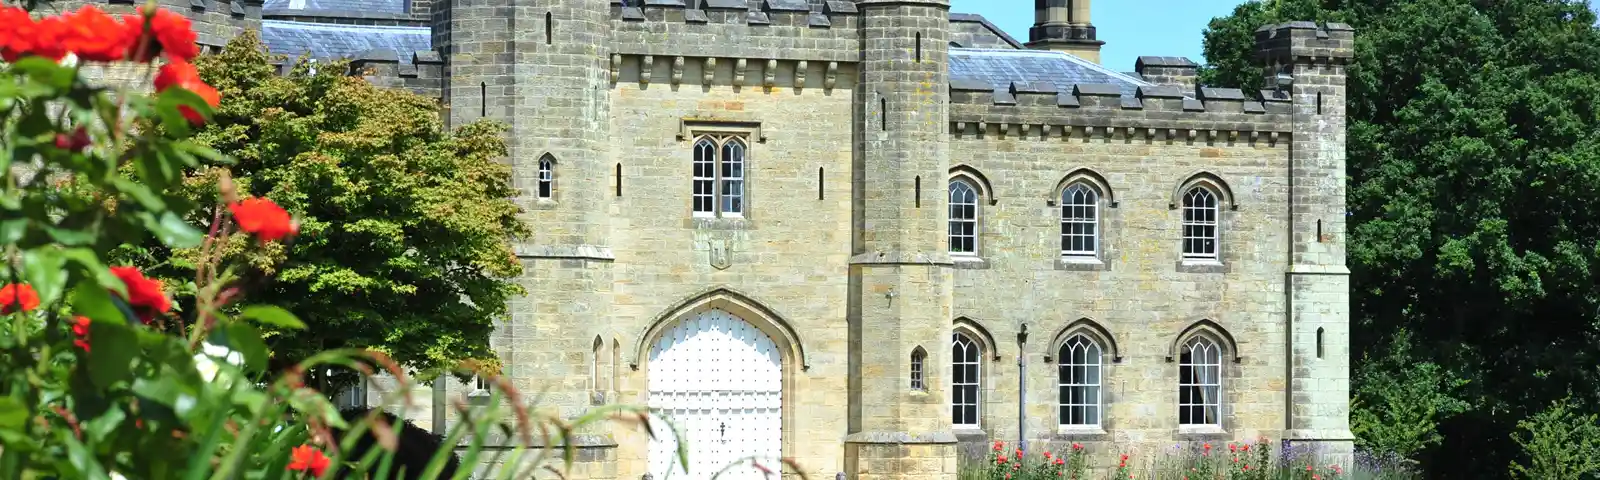 Chiddingstone Castle in Summer.jpg